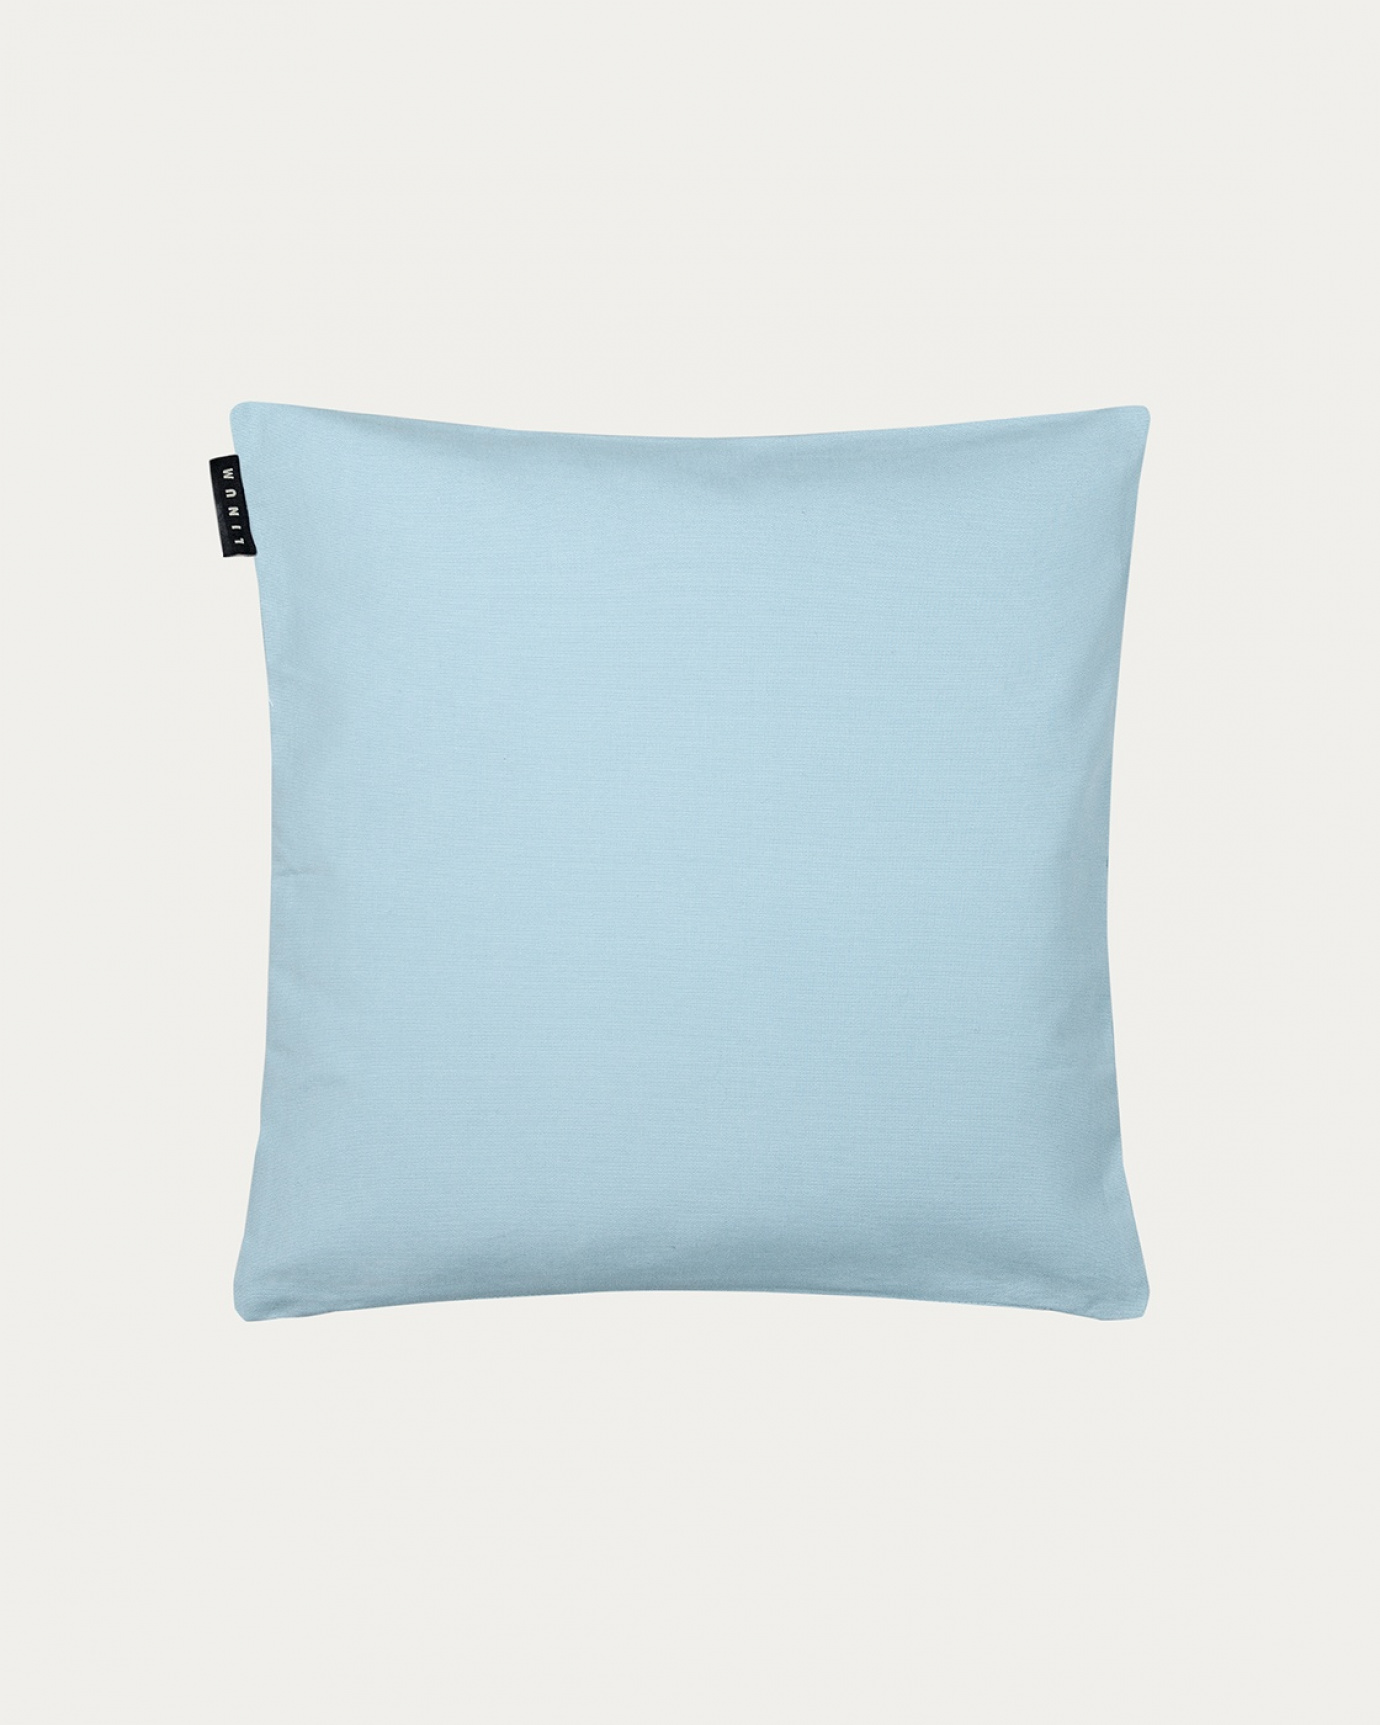 Image du produit housse de coussin ANNABELL bleu nuage en coton doux de LINUM DESIGN. Taille 40 x 40 cm.